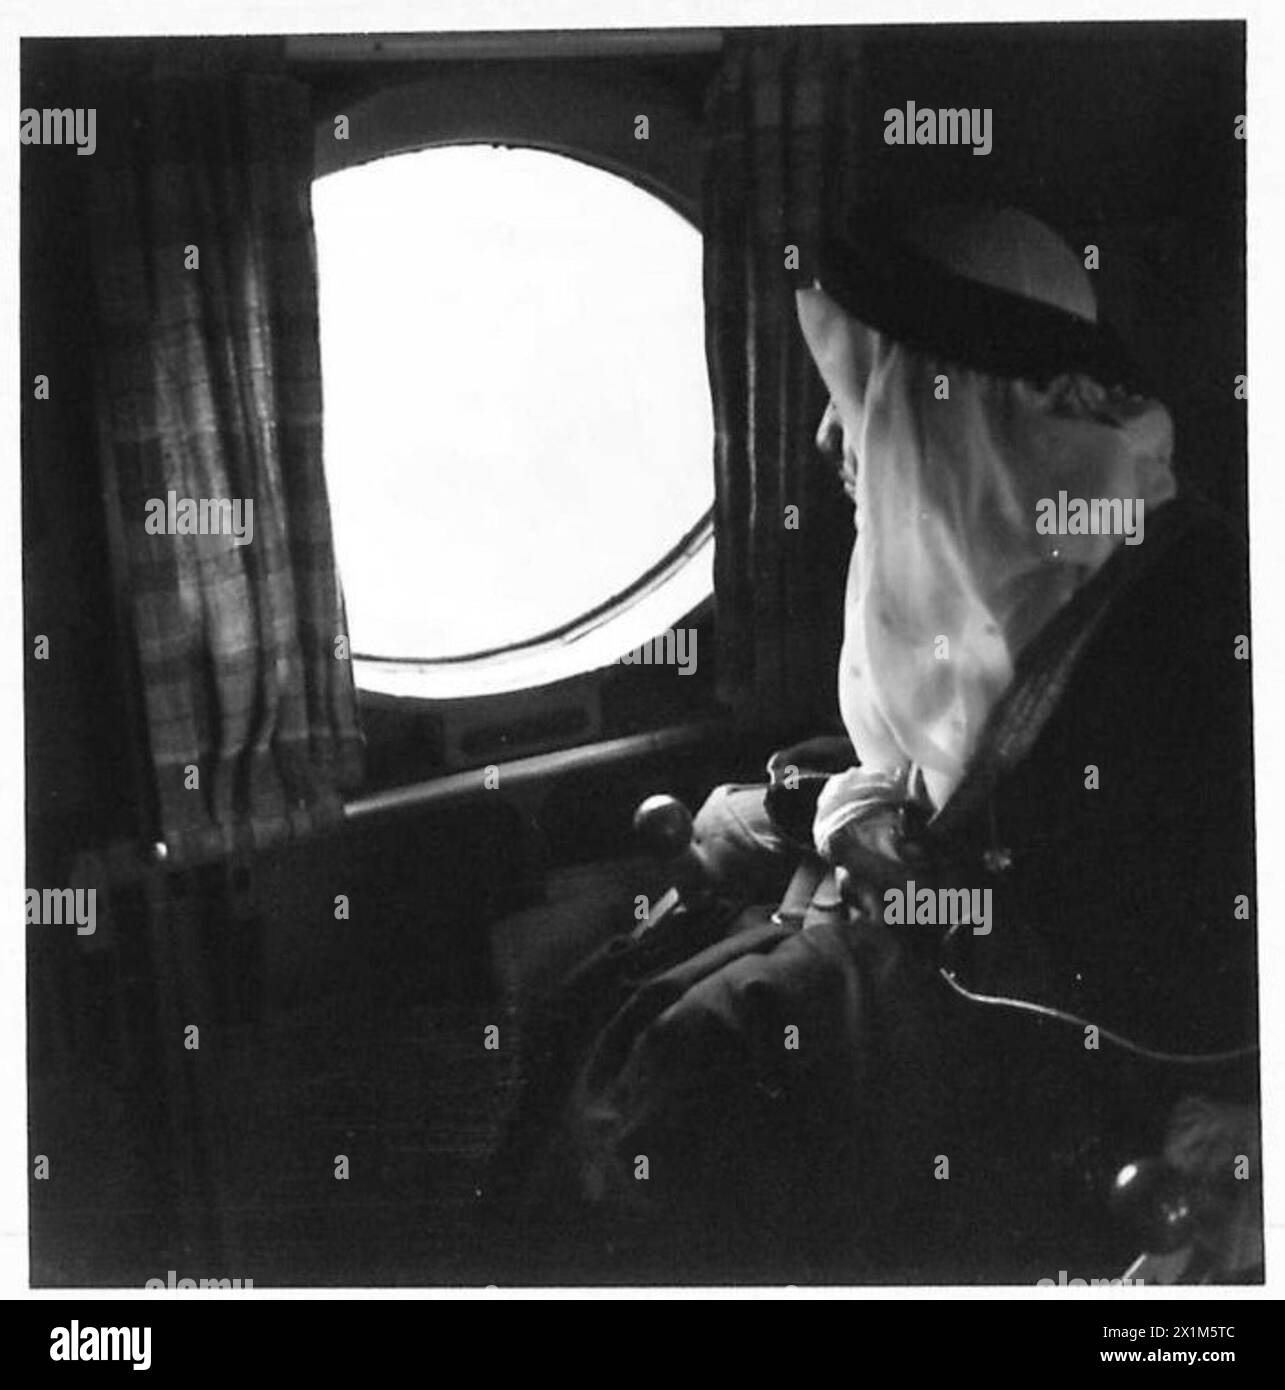 VIER EMIRE FLIEGEN ÜBER ALAMEIN - Emir Fahd blickt aus dem Fenster des Flugzeugs, als es über das Schlachtfeld von Alamein fliegt. Stockfoto